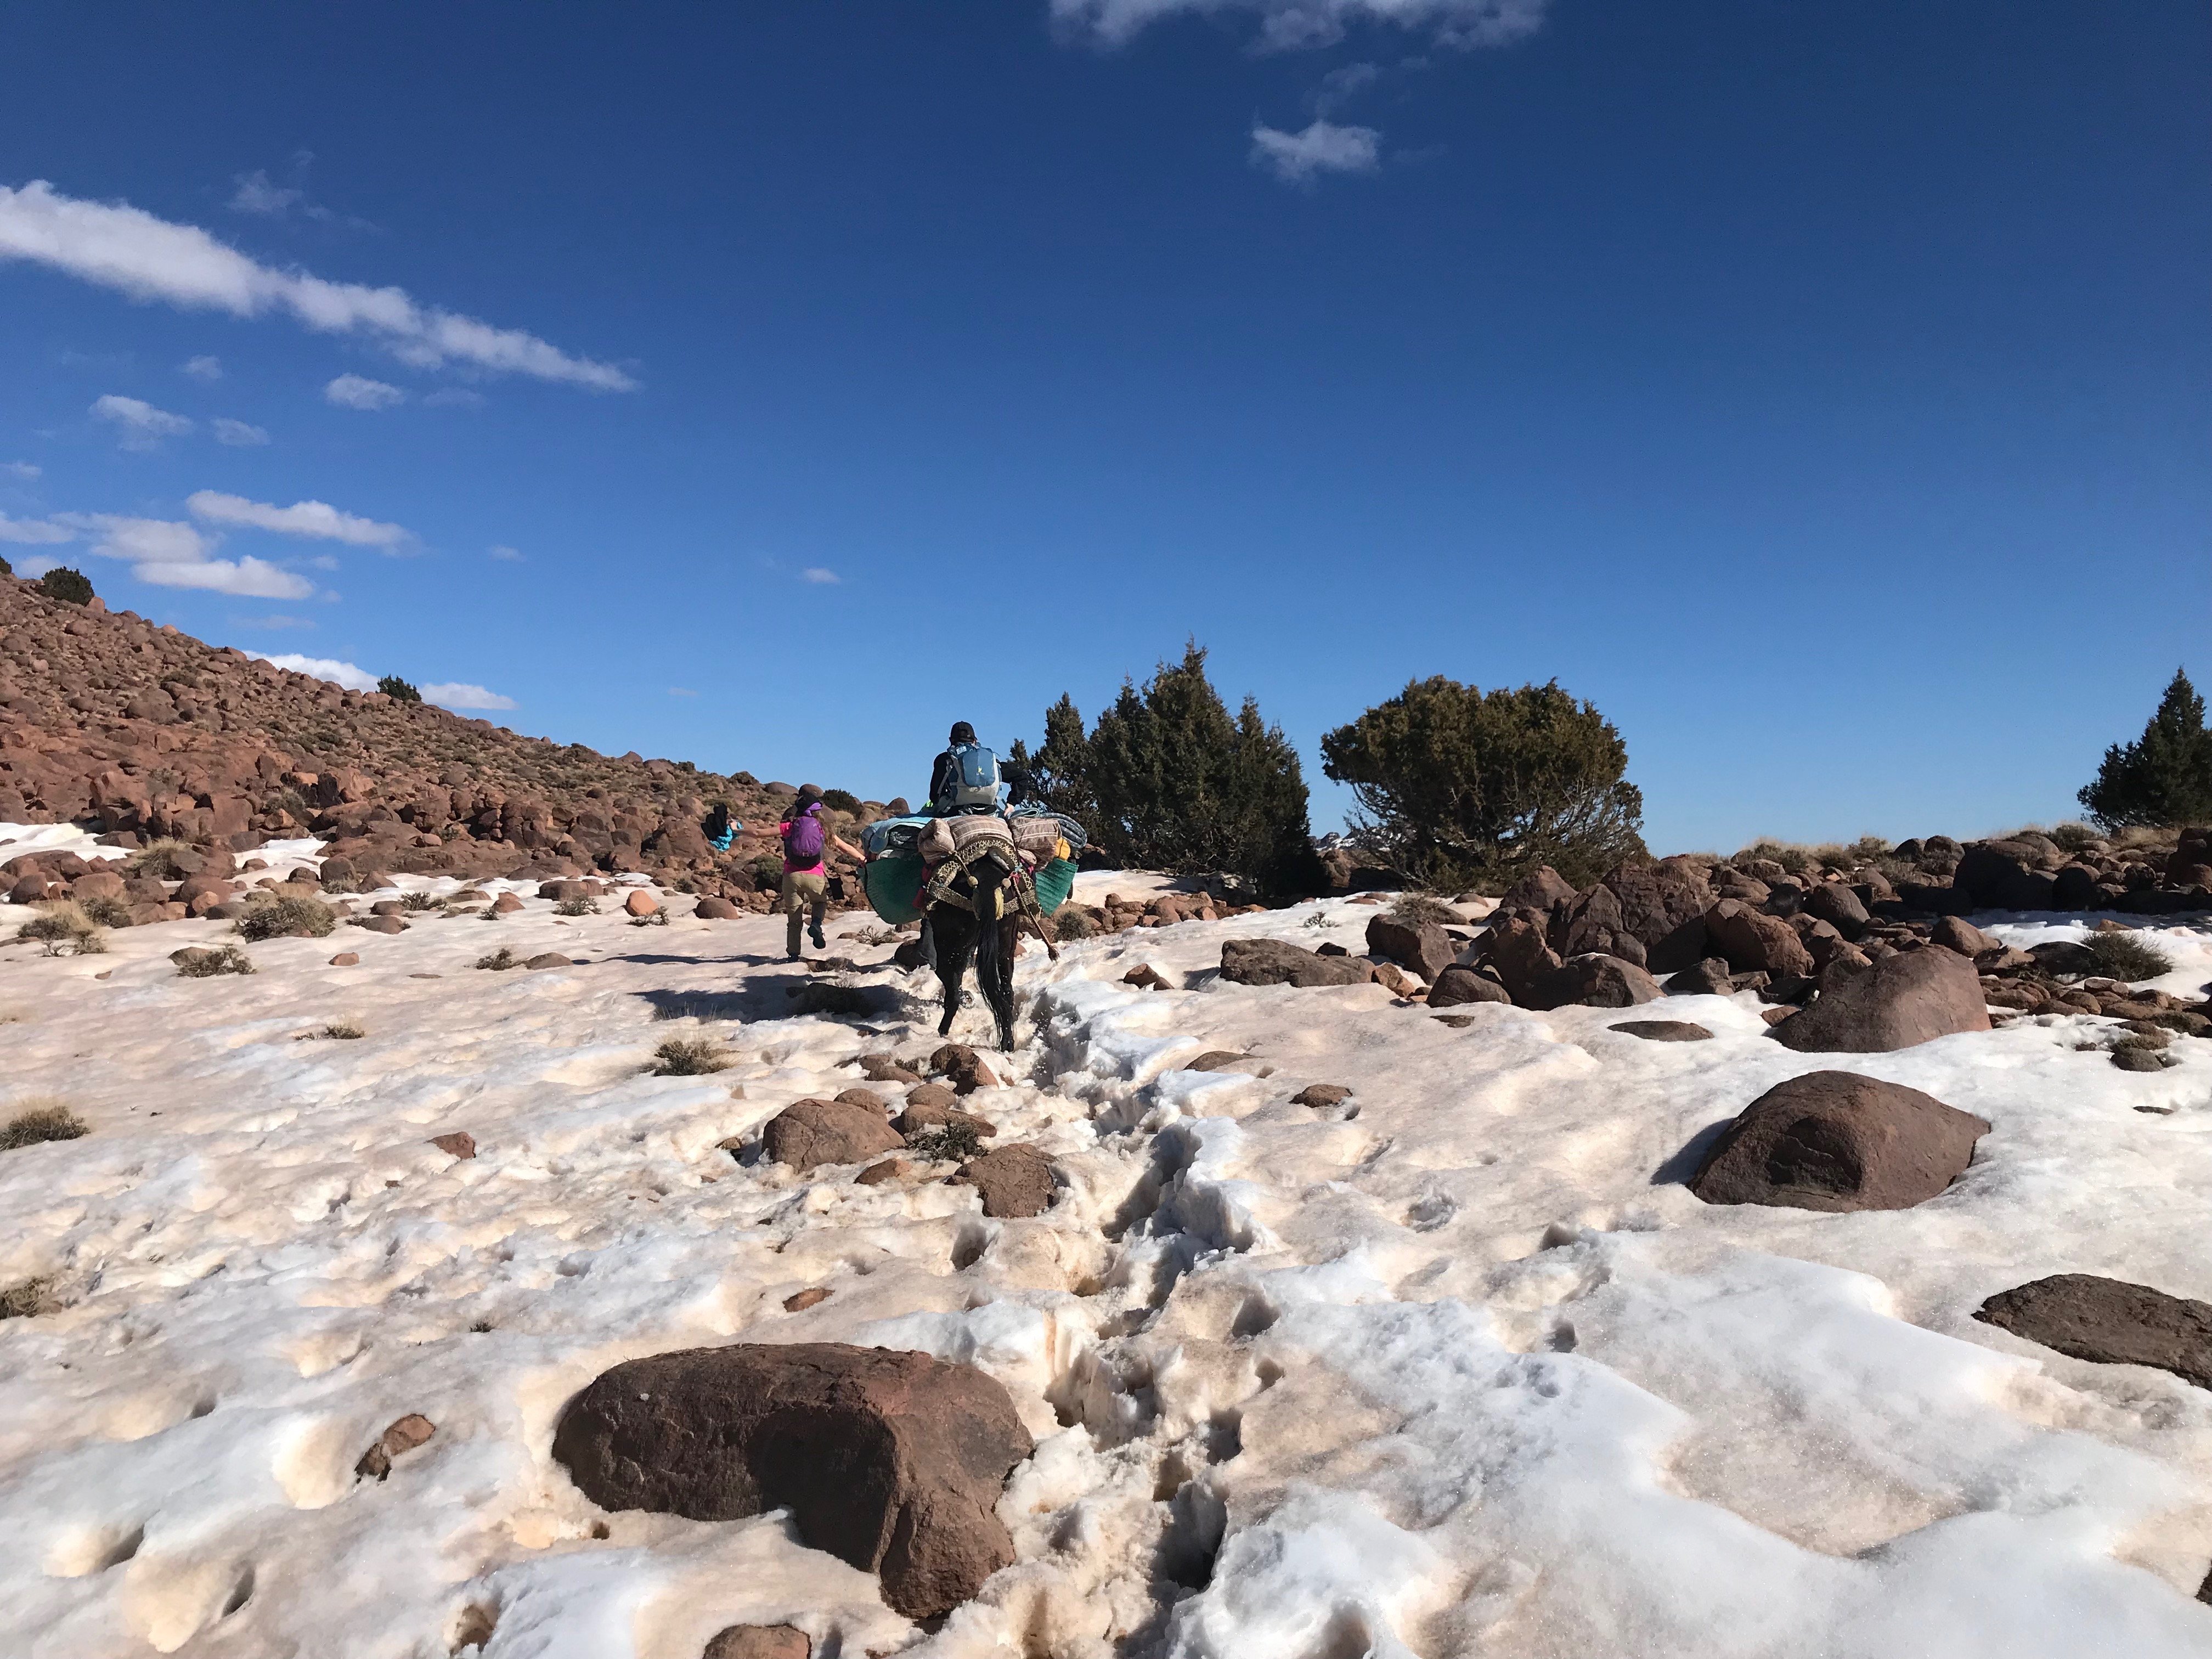 Randonnée dans la neige au Djebel Saghro